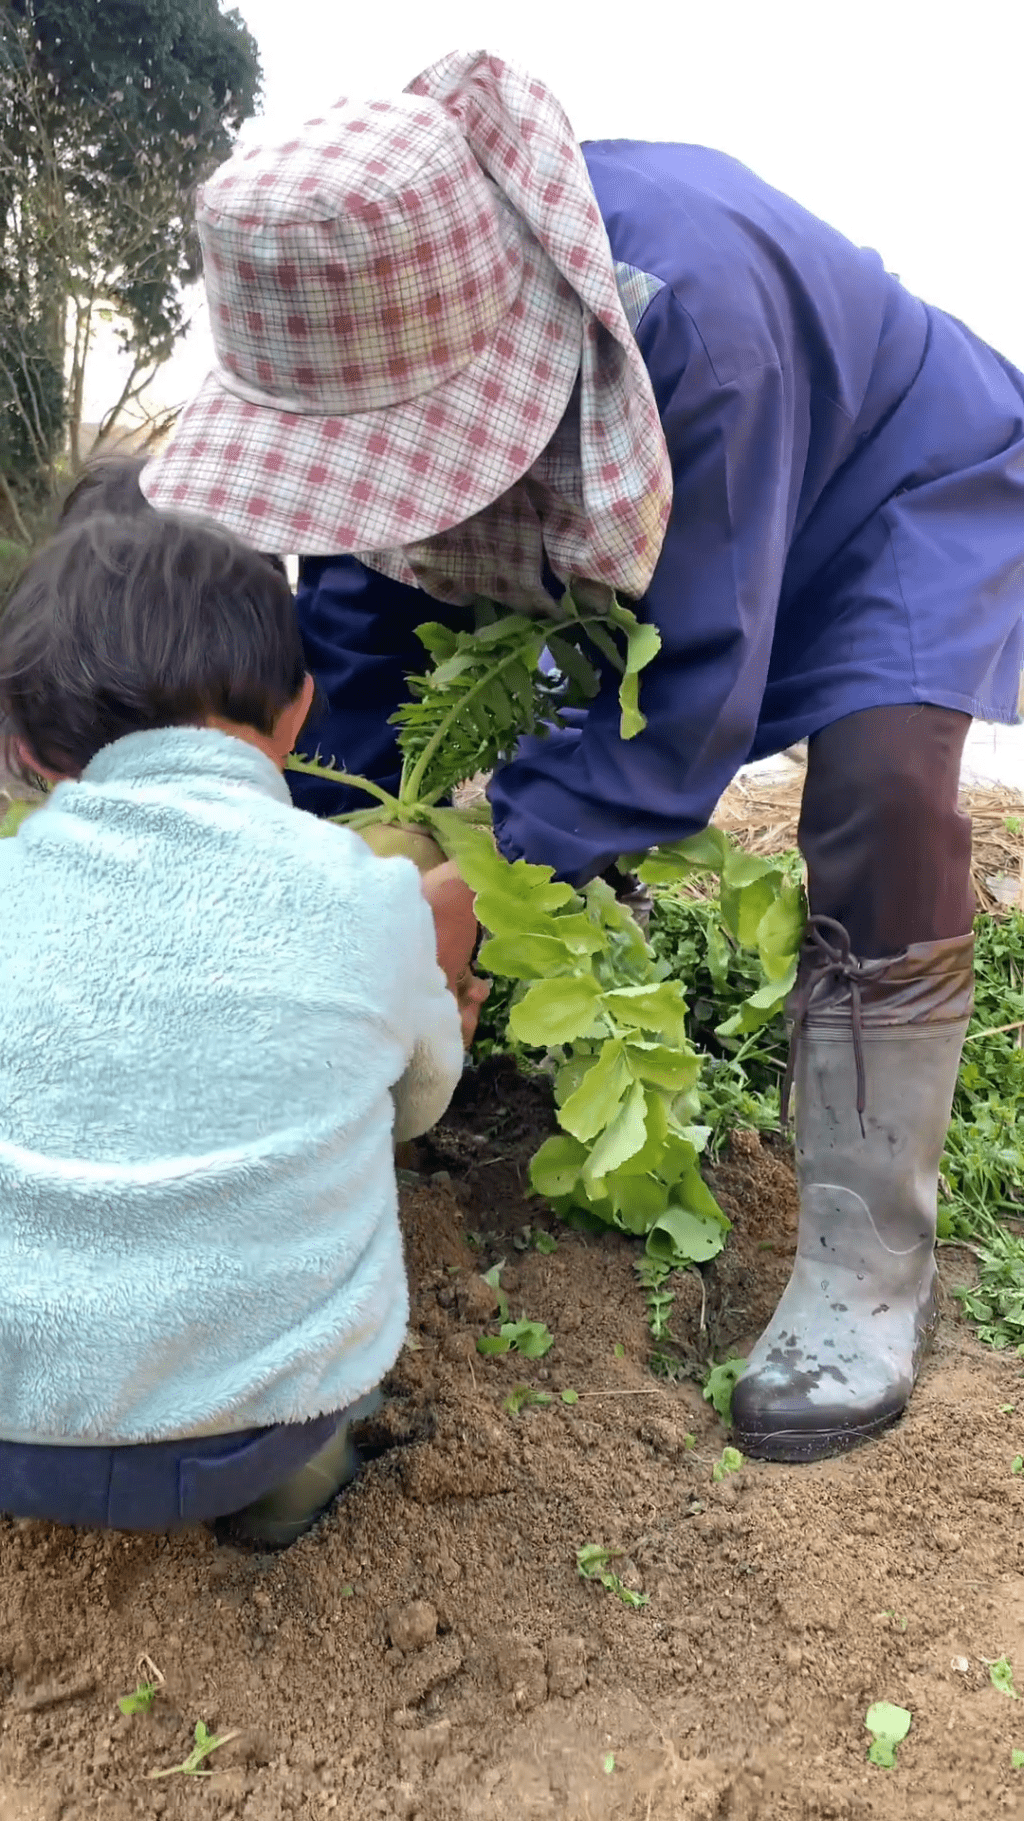 影片看到一名农夫与两名小孩，正在掘出「萝卜脚」。